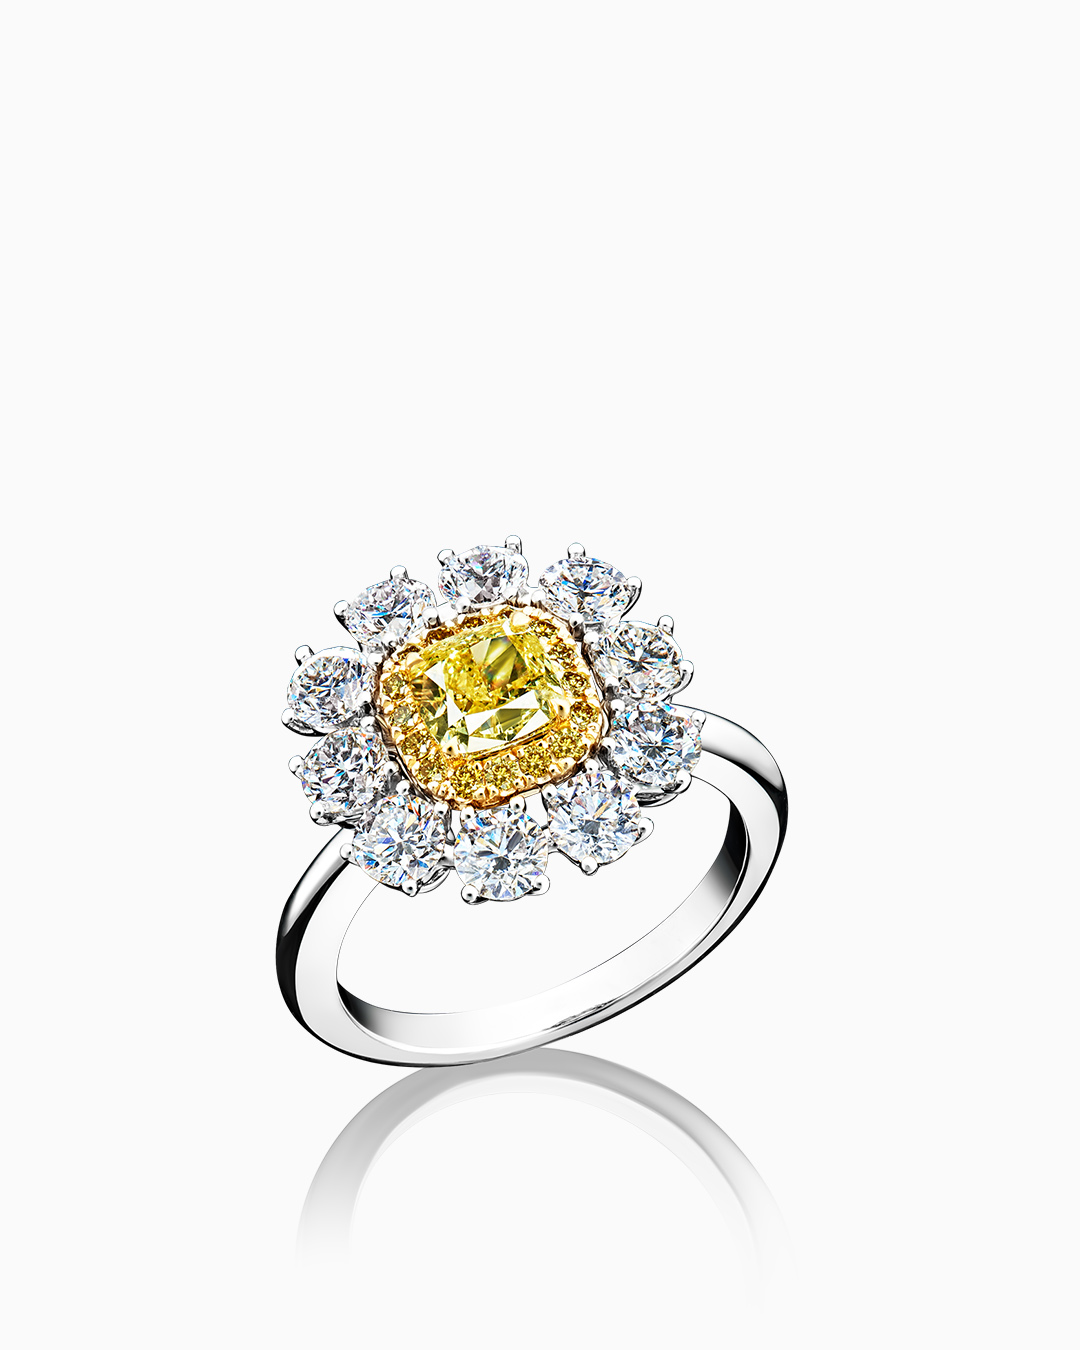 Бриллиантовое кольцо в виде цветка ромашки - фото 1